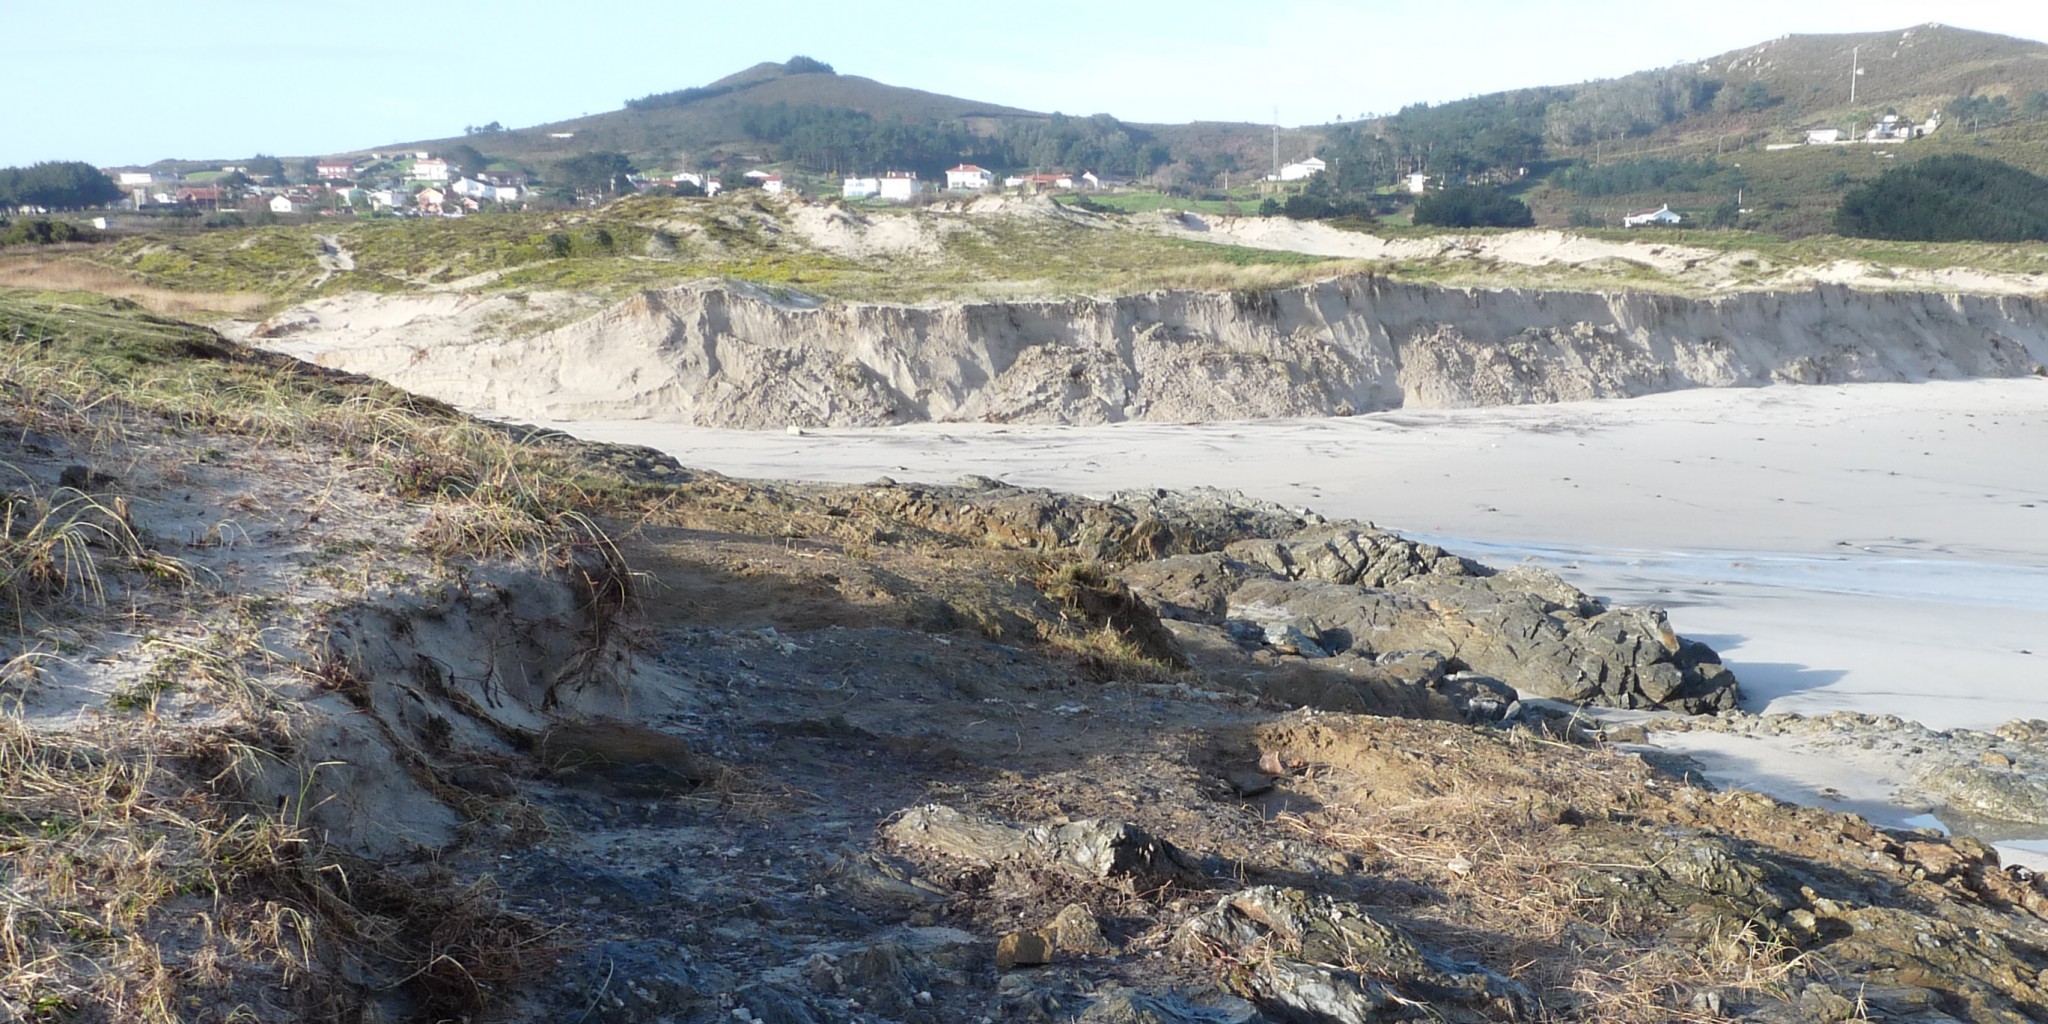 Foto 18: Fotos del lugar en el que apareció un enterramiento humano (Playa de Santa Comba)